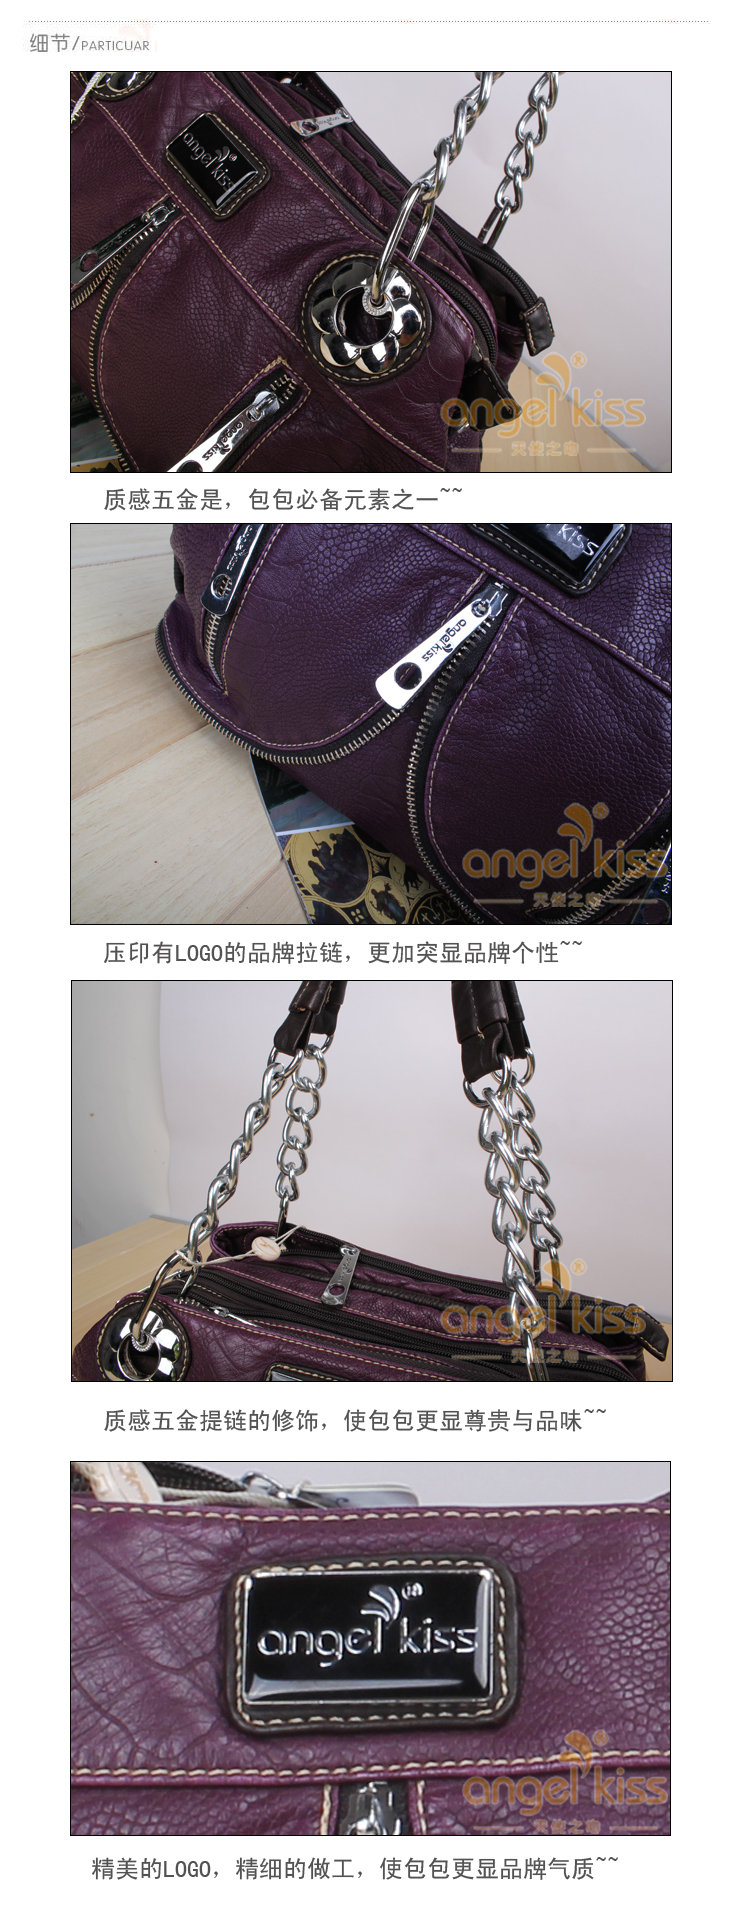 紫色链条单肩包 韩版斜挎包 2013新款时尚休闲包